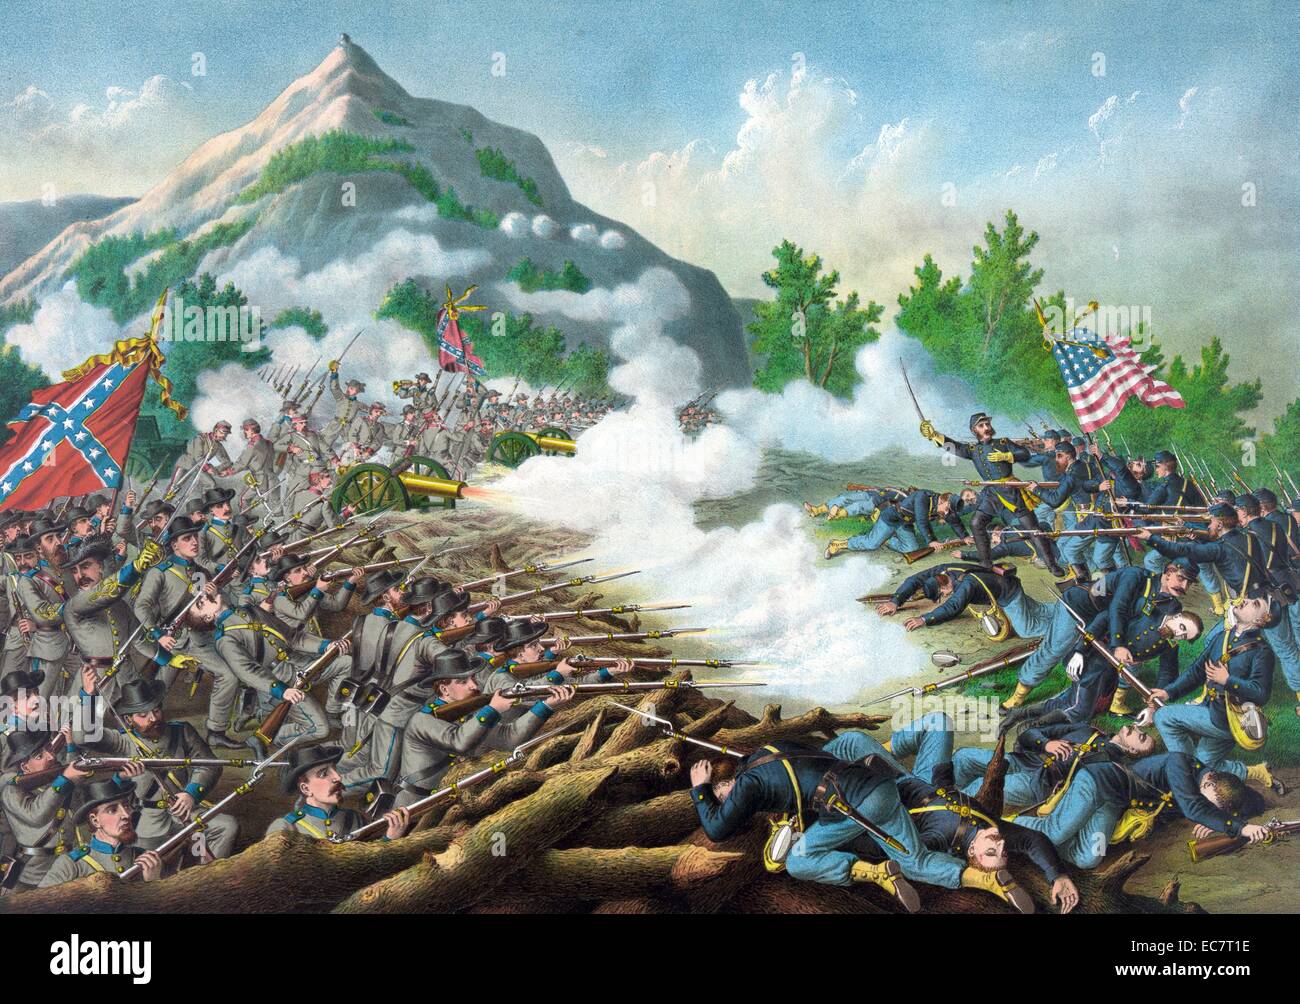 La guerre civile américaine - La bataille de Kenesaw Mountain en 1864. C'était la plus grosse attaque de front le lancement, lancé par l'Union européenne, contre l'armée confédérée. Banque D'Images